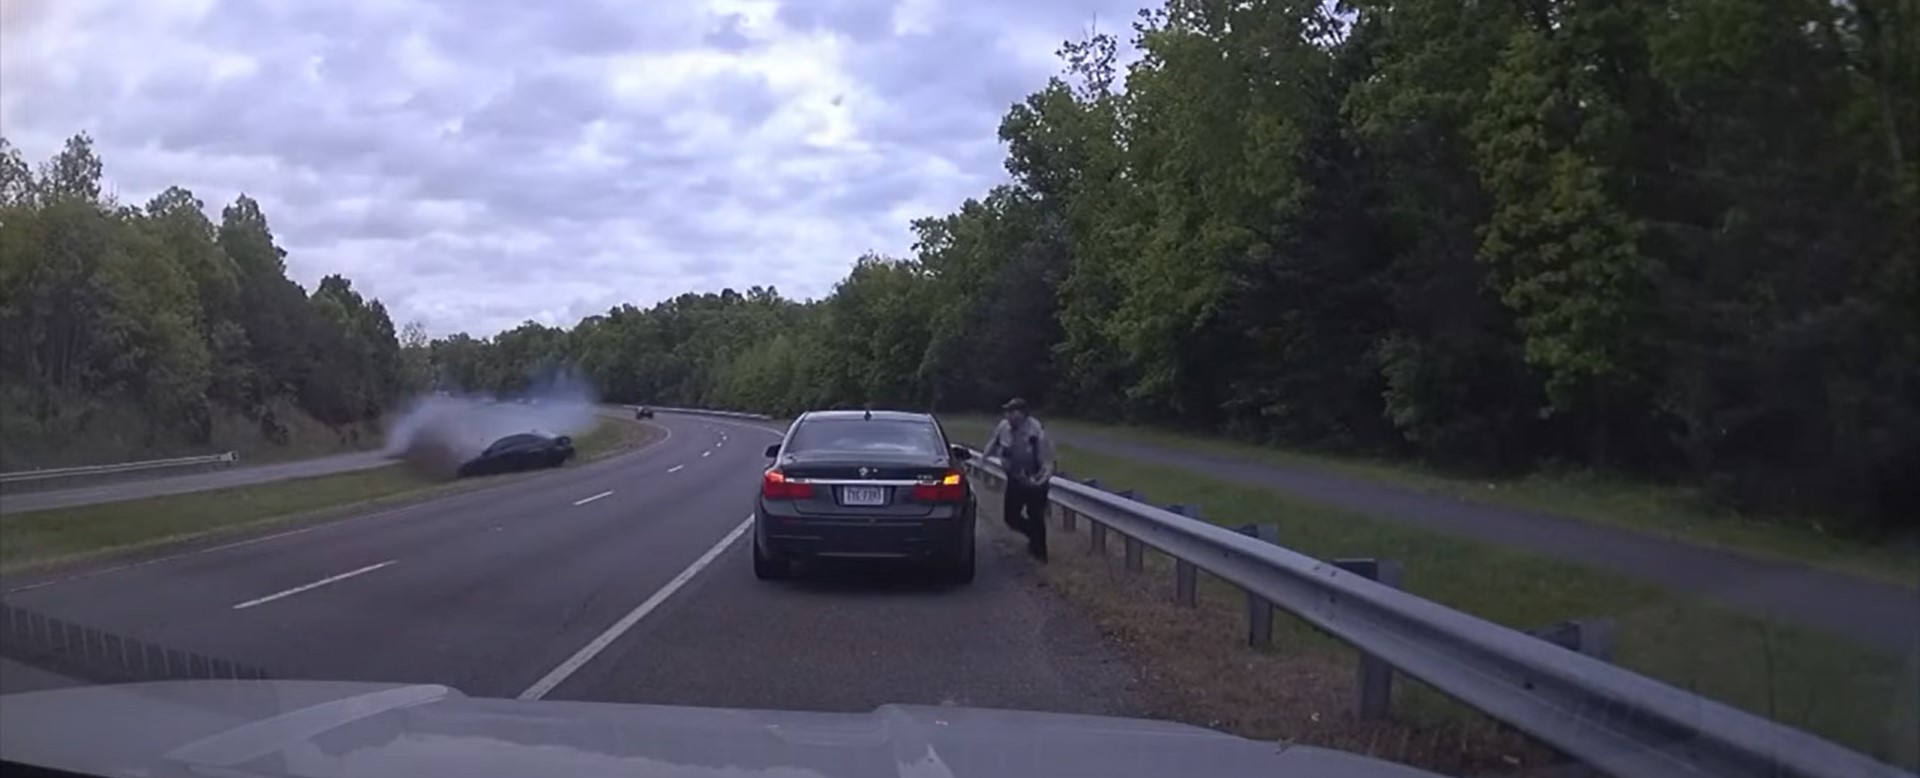 VIDEO: policía esquiva choque en carretera